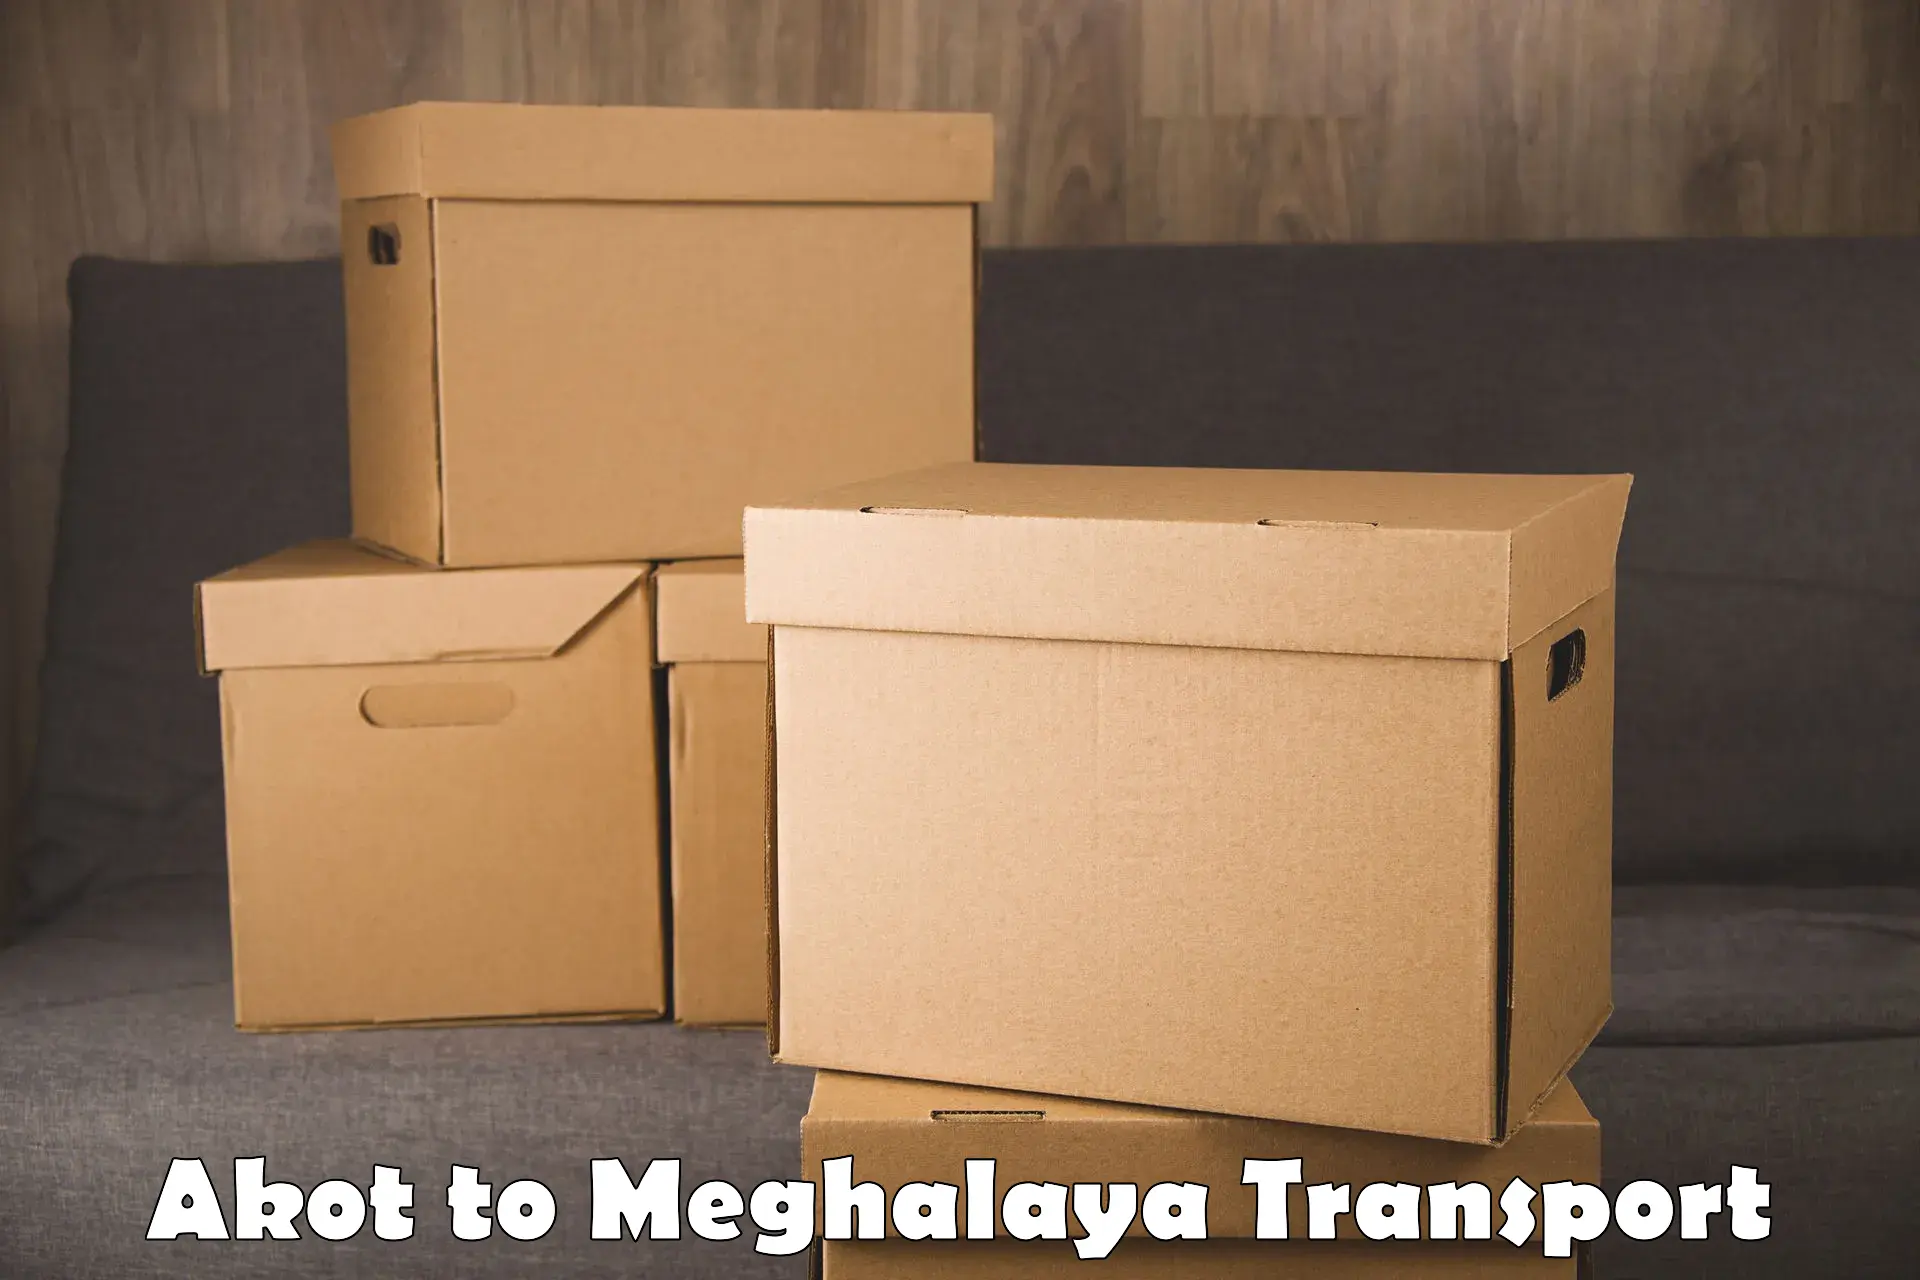 Furniture transport service Akot to NIT Meghalaya